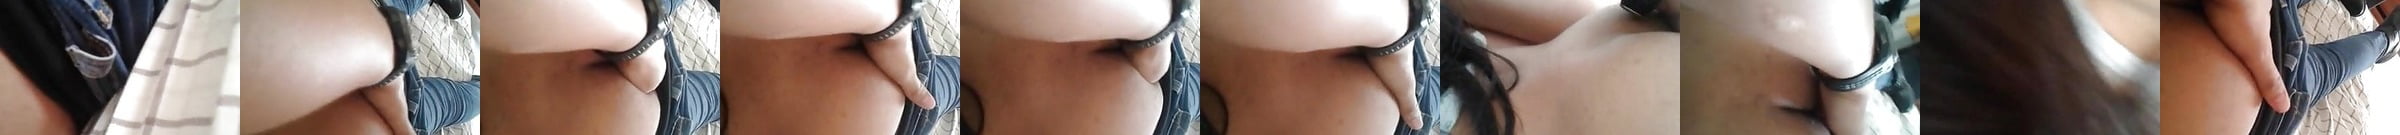 Negra Cavala Gostosa Dando Para Dois Video Tres Hd Porn E2 Xhamster